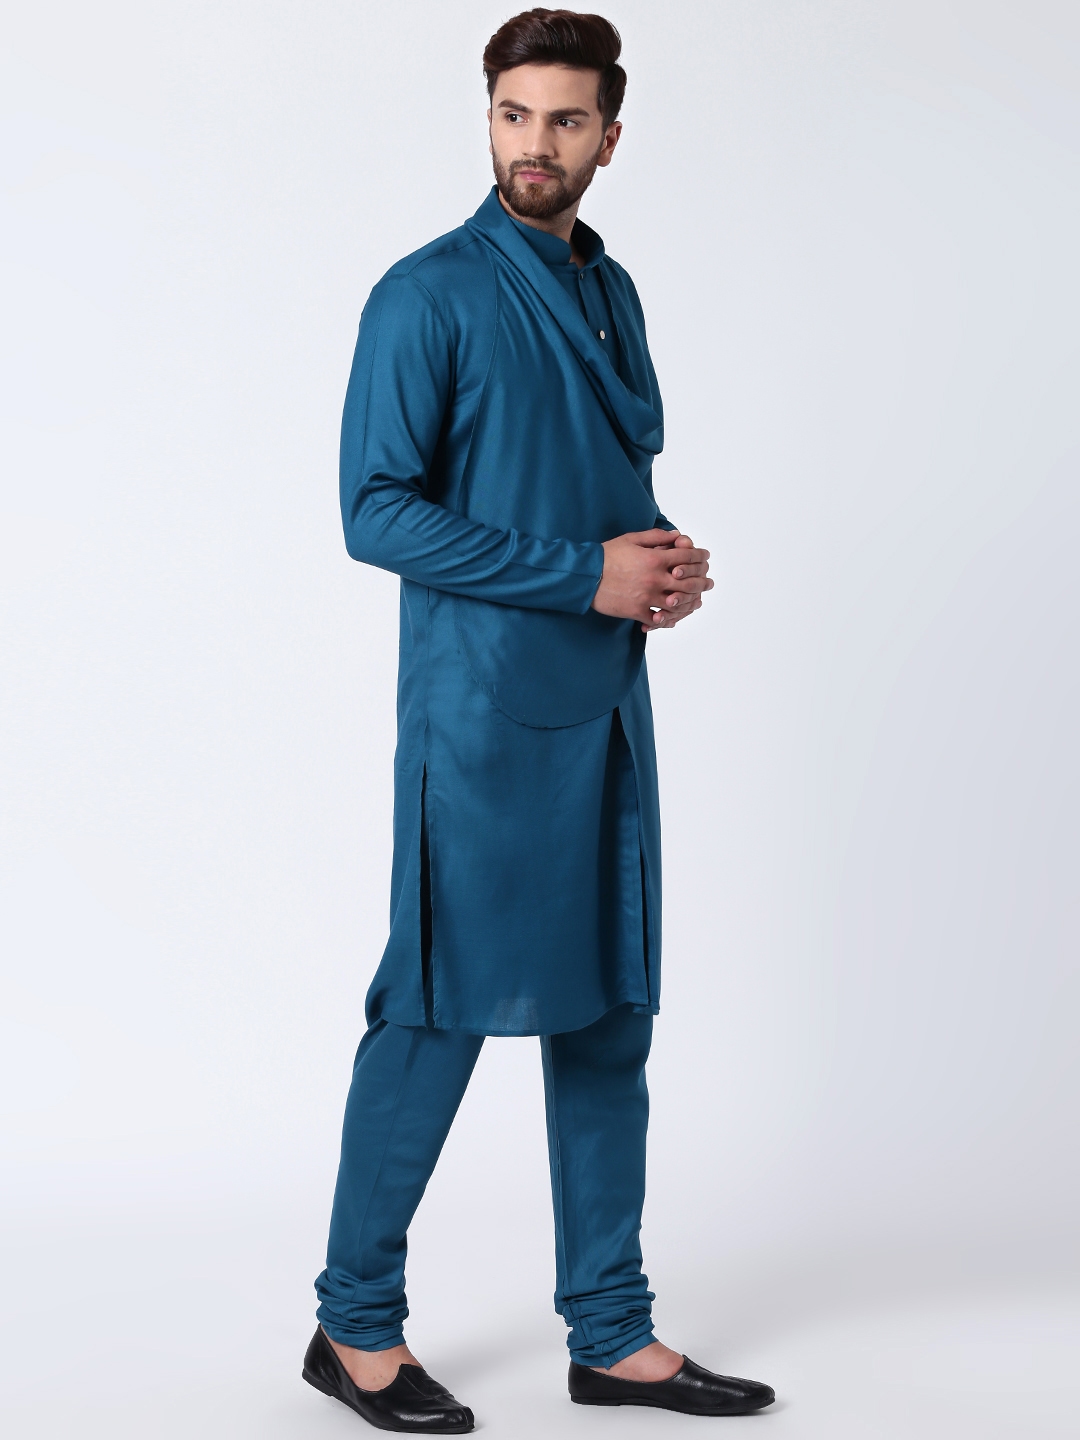 Radanya Designer Traditional Wear Kurta Pajama Tunic Shirt Ethnic Dress